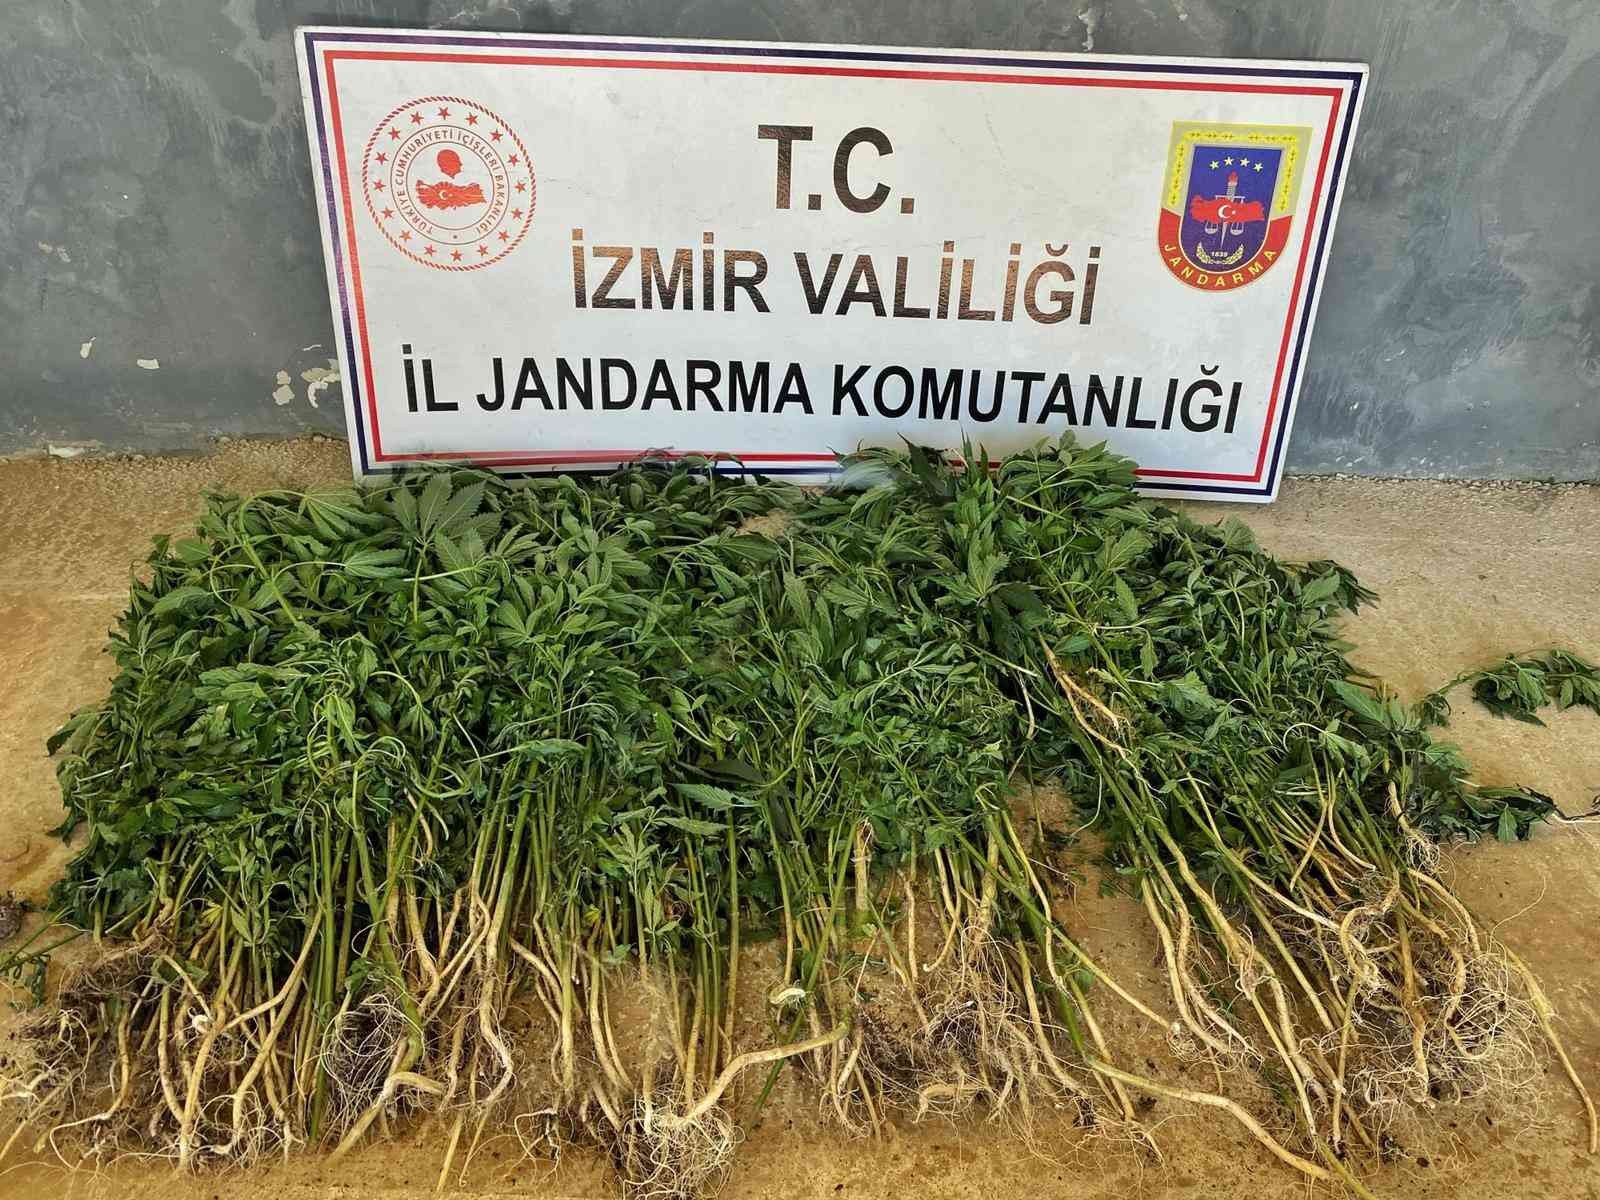 İzmir’in 9 ilçesinde uyuşturucu operasyonları: 26 gözaltı